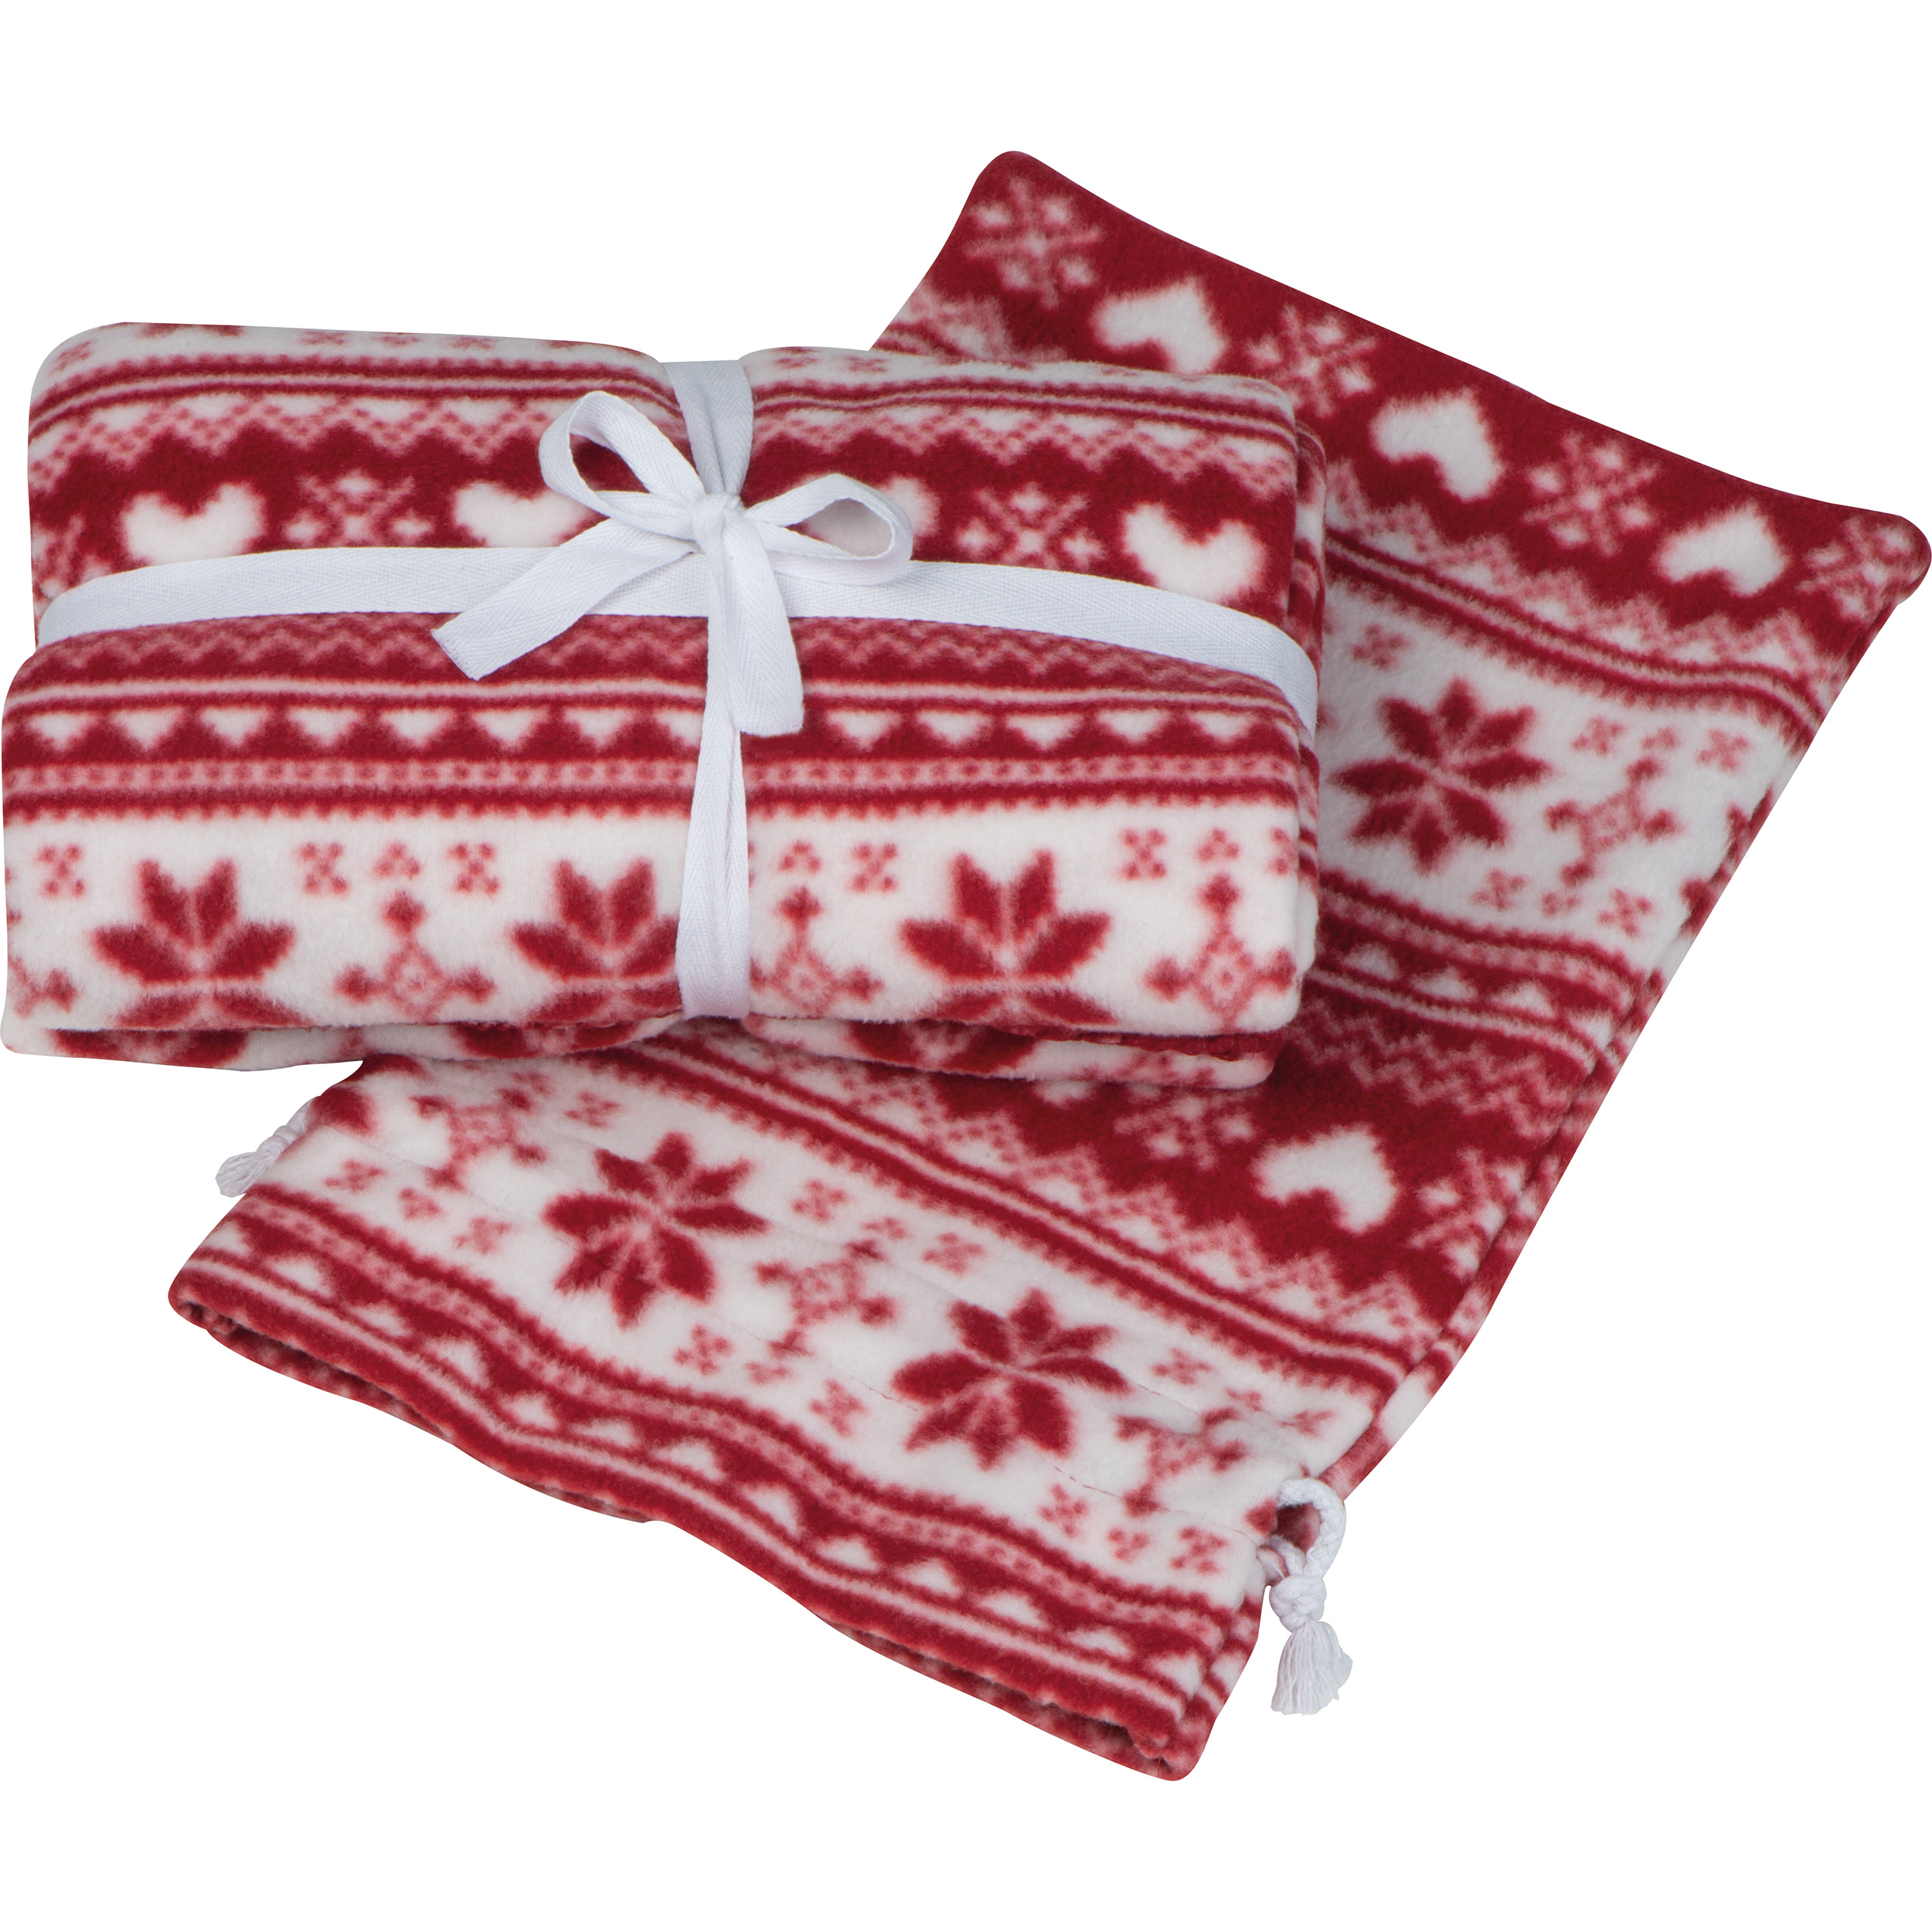 Christmassy blanket